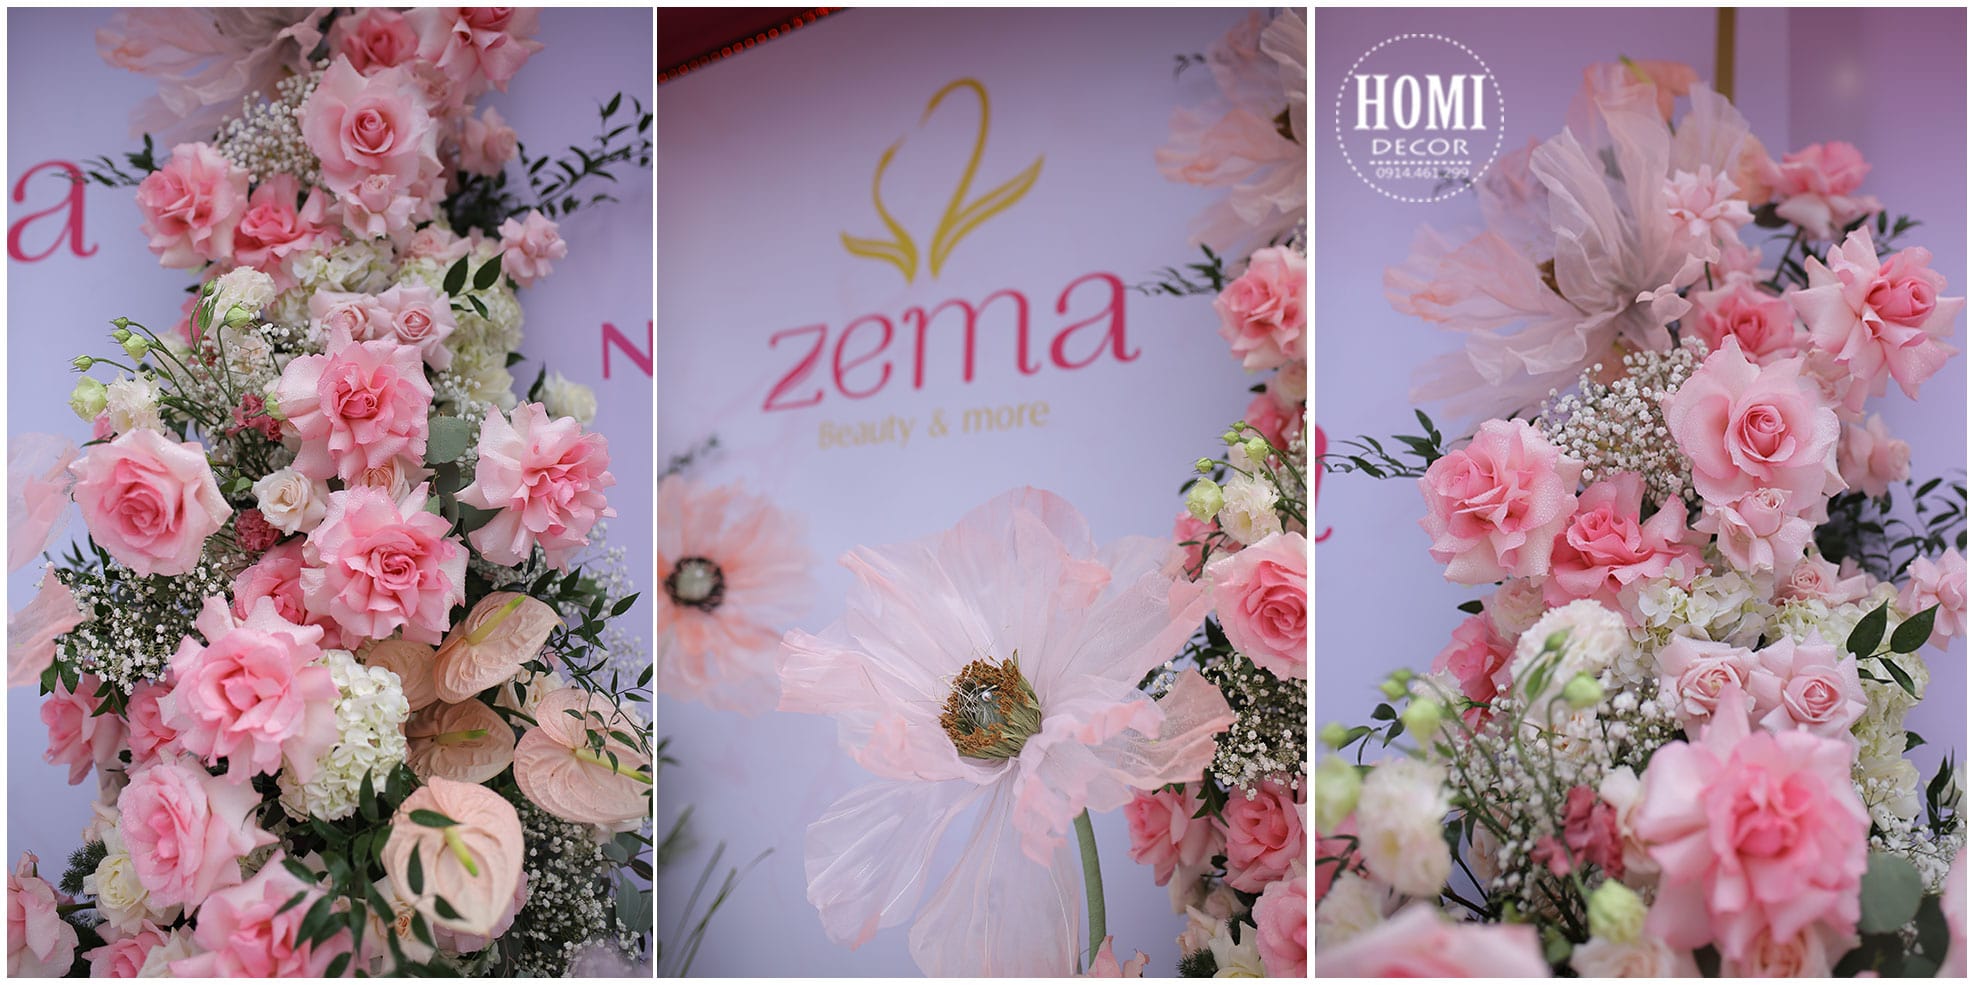 Tổ chức lễ kỷ niệm 4 năm hệ thống Zema Beauty Nails Hair & Spa 